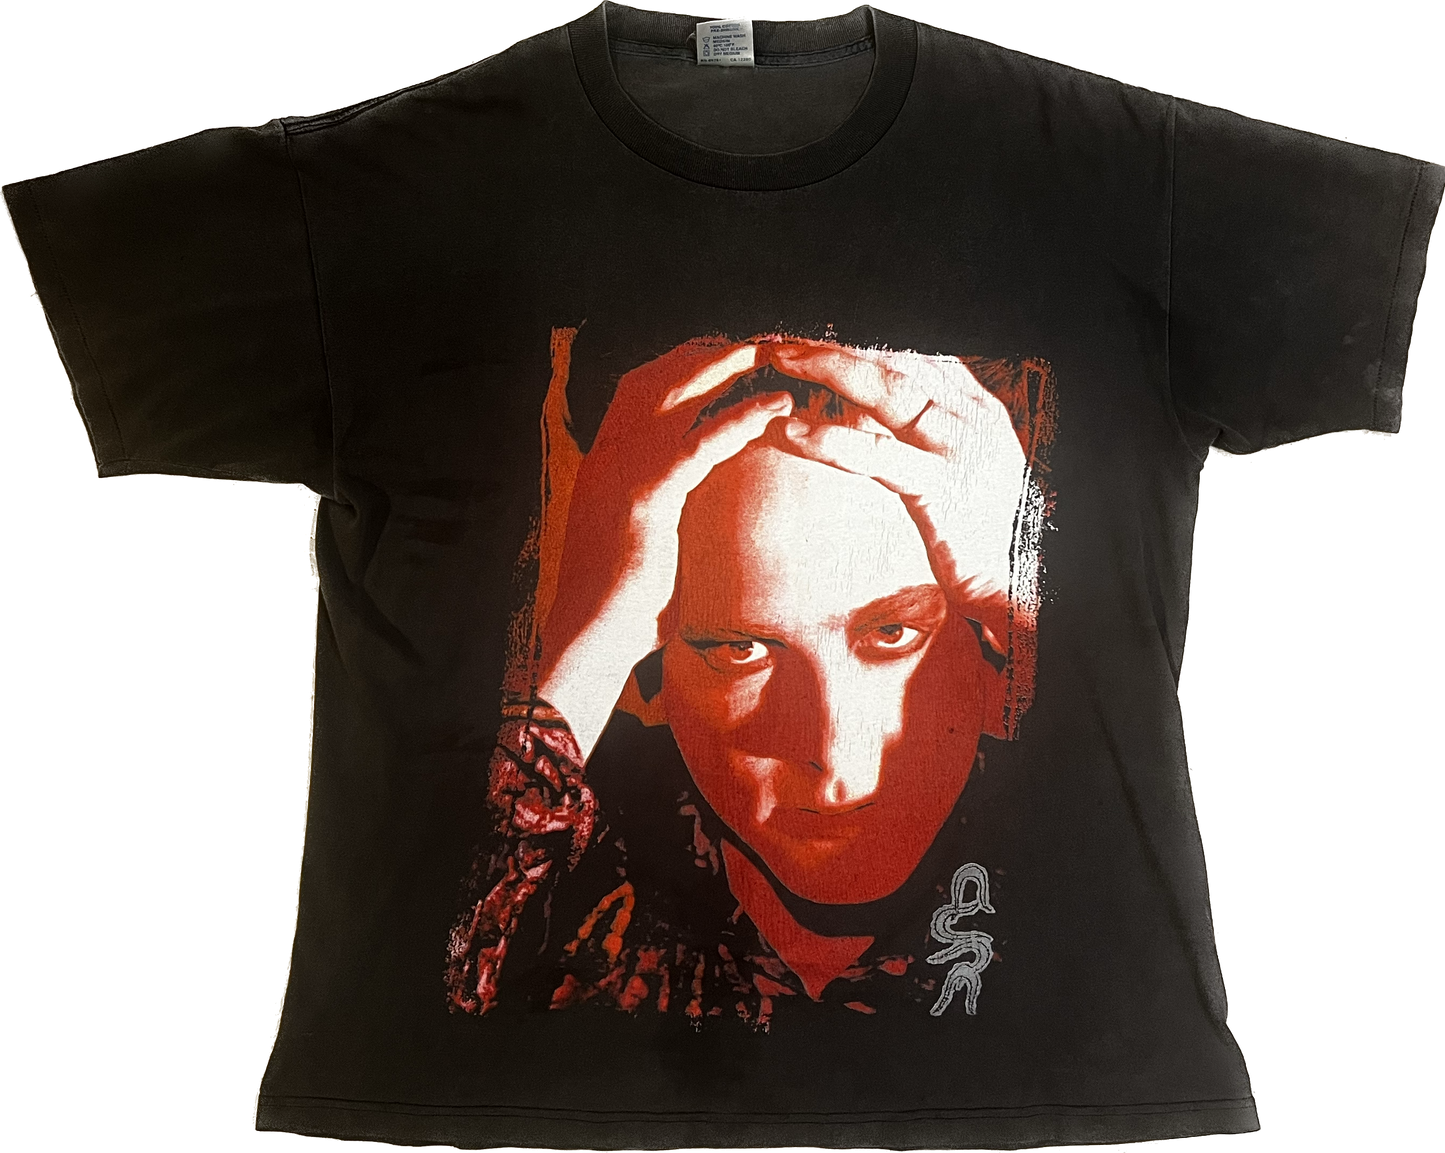 The Cure 1992 Wish Tour Vintage T Shirt